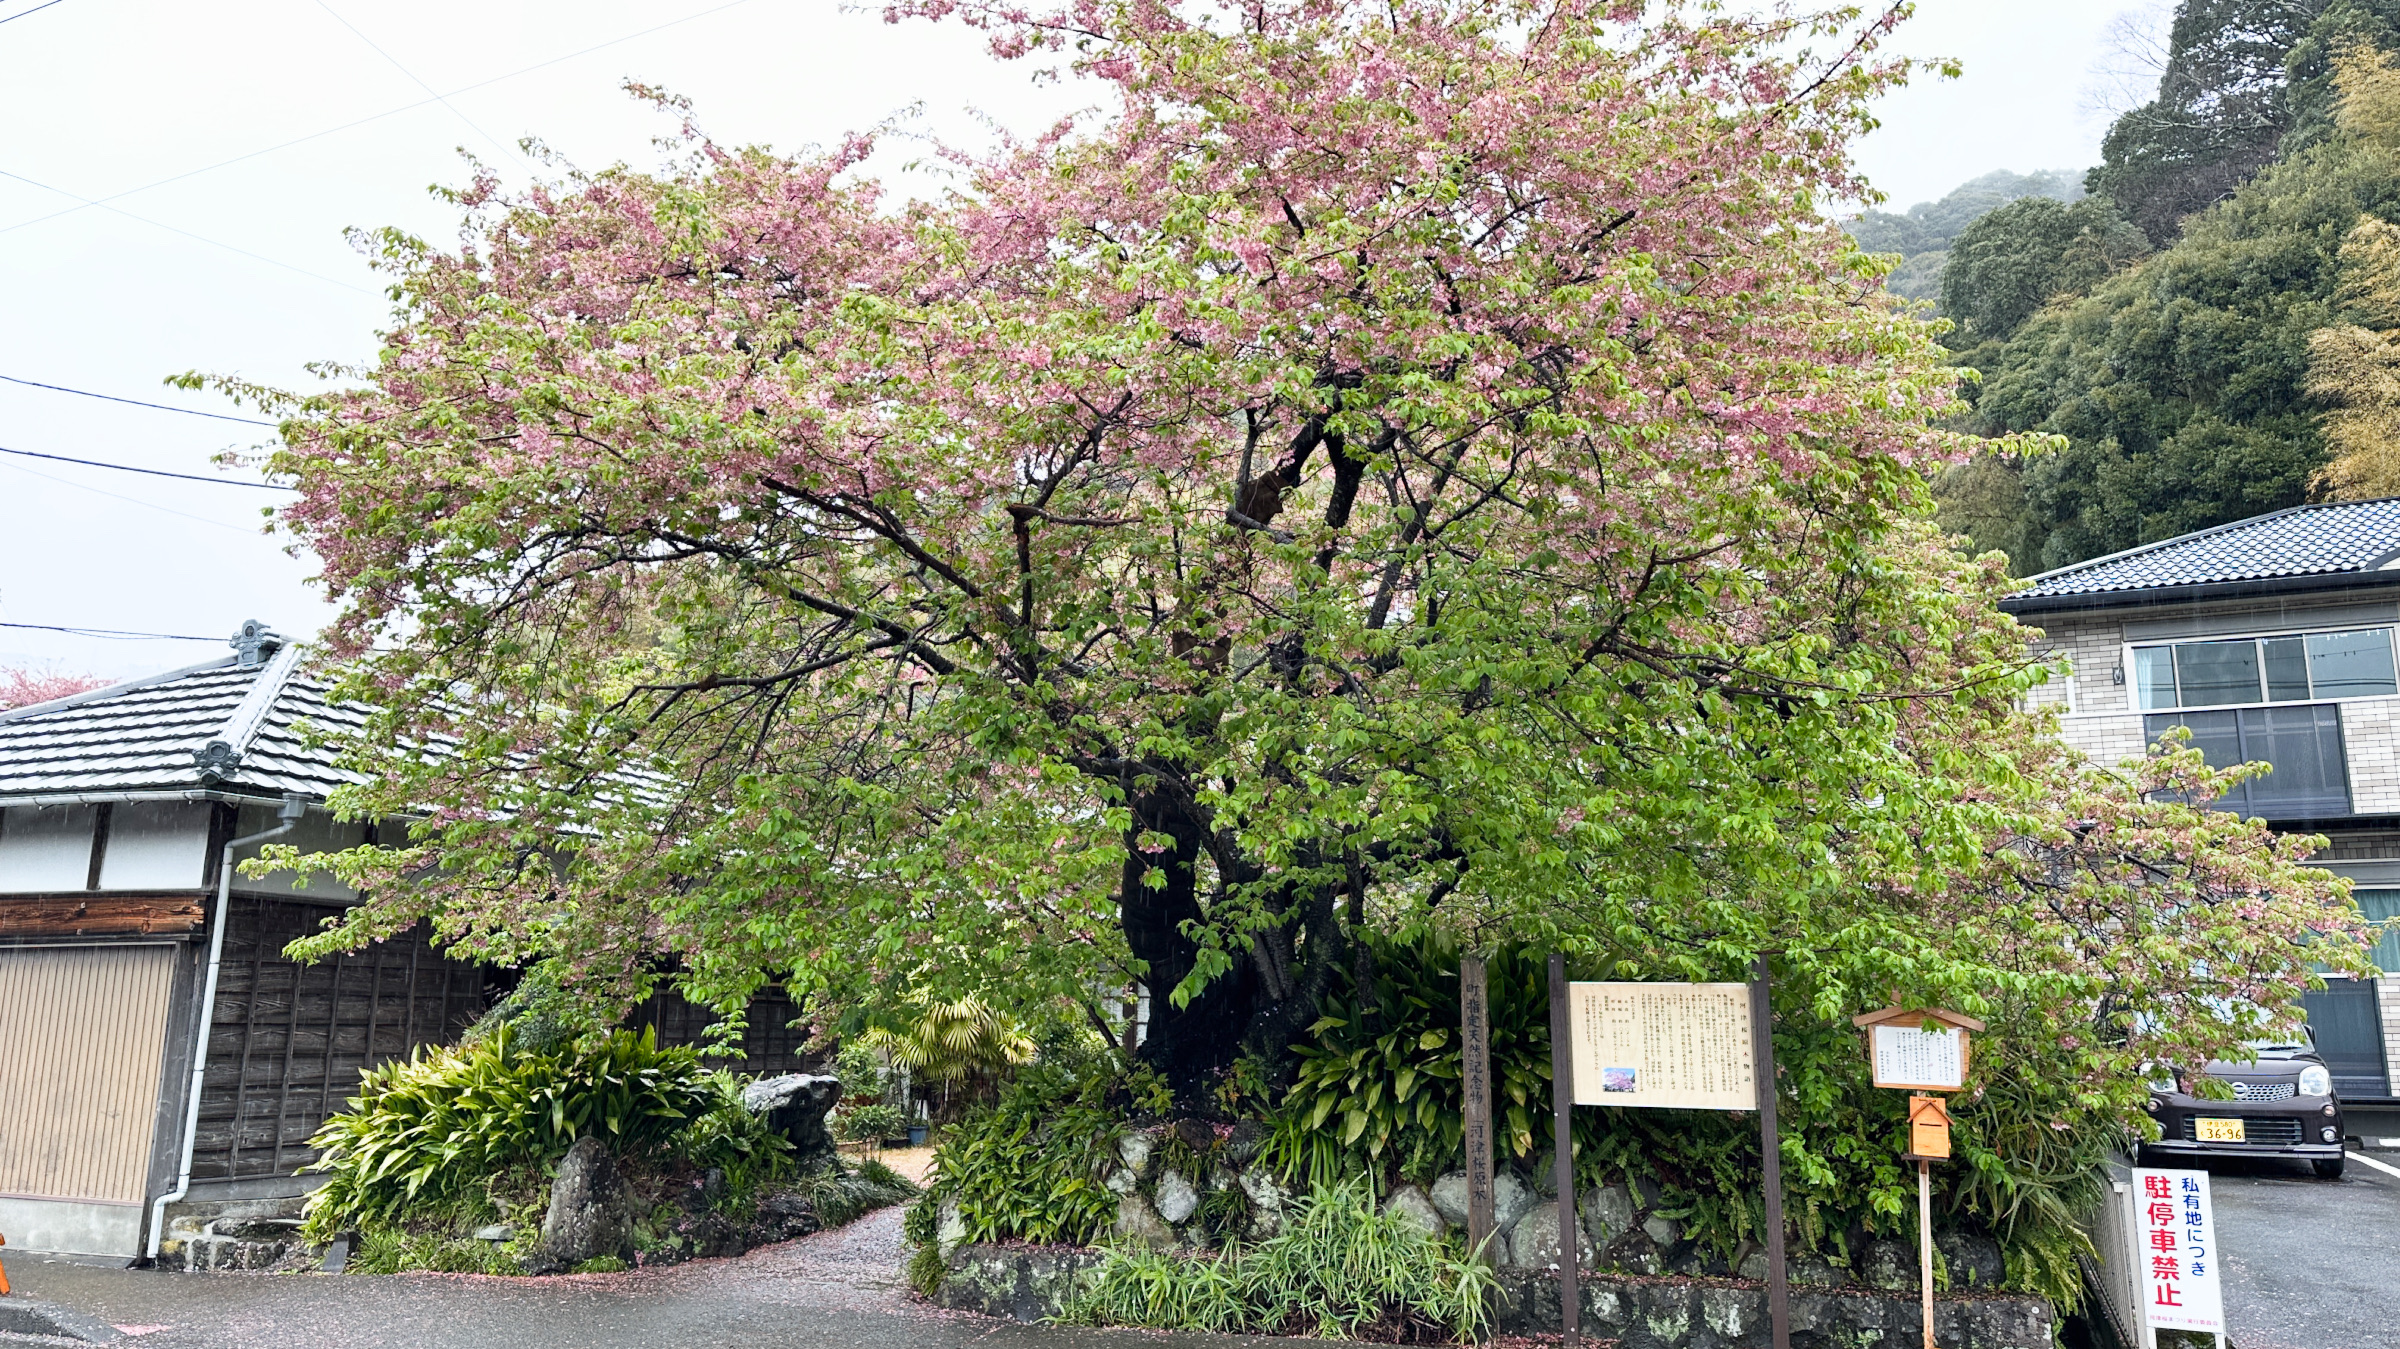 Der Ursprungsbaum der Kawazusakura vor dem ehemaligen Haus von Katsumi Iida.